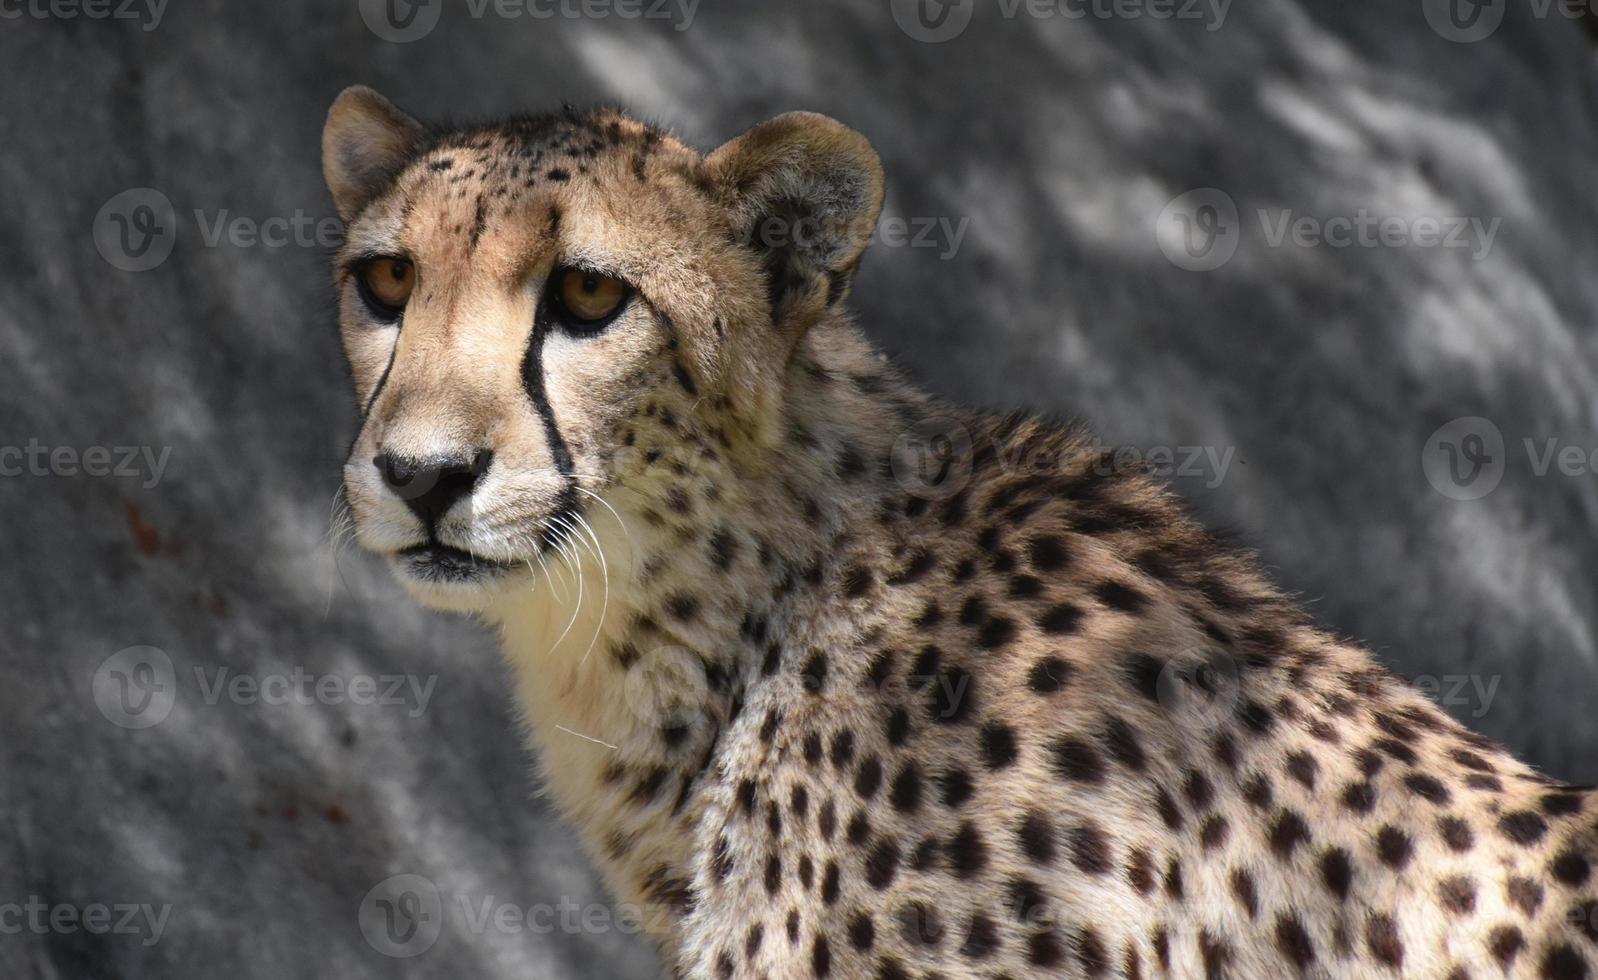 Close Up Look at the Face of a Cheetah photo